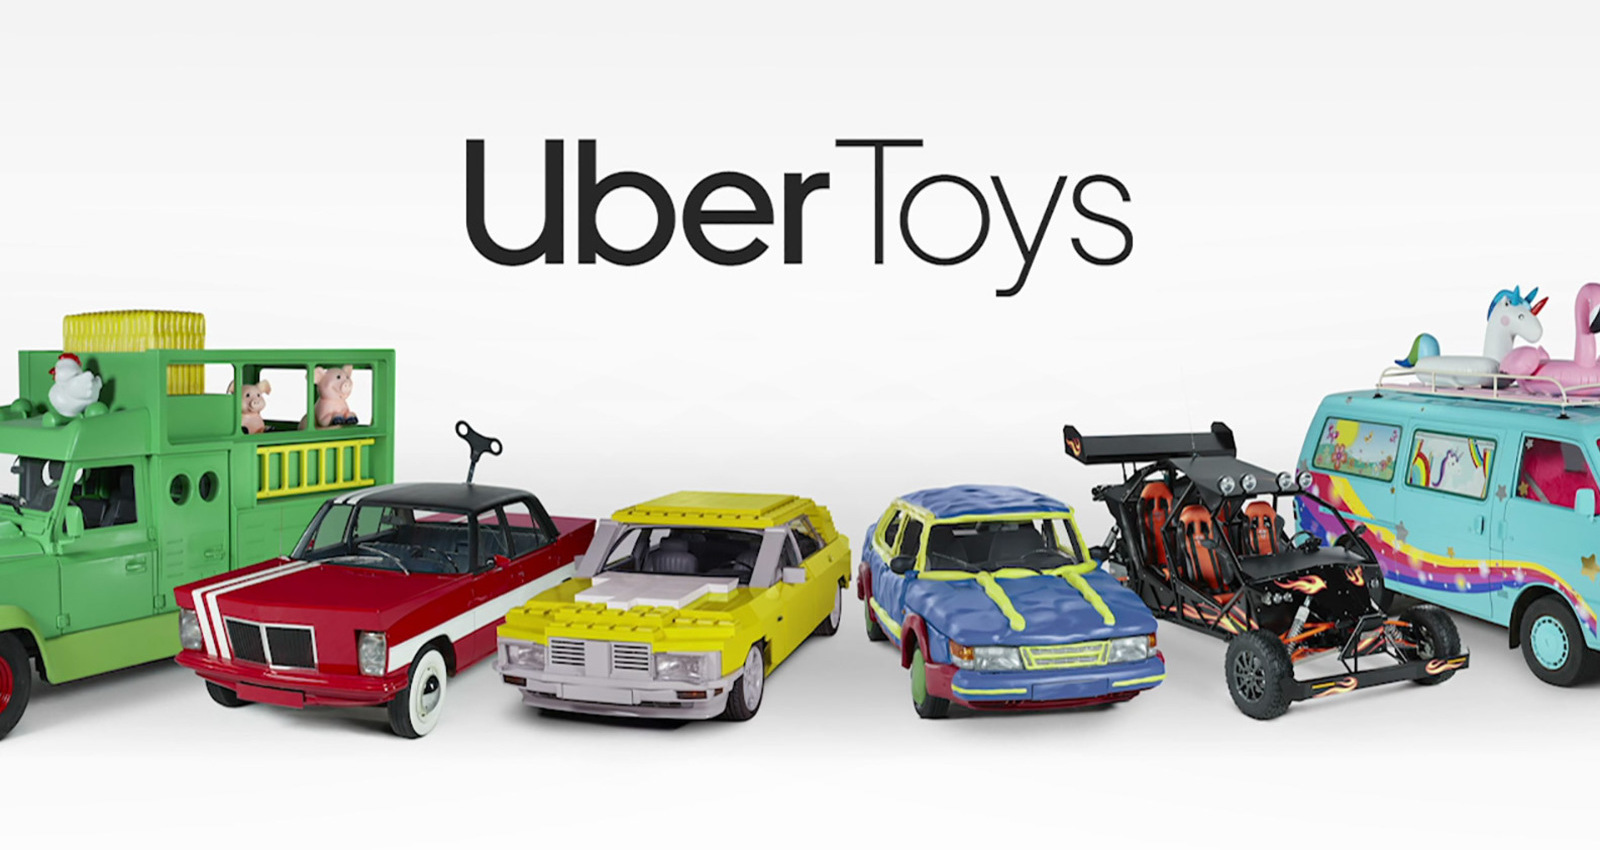 Uber Toys